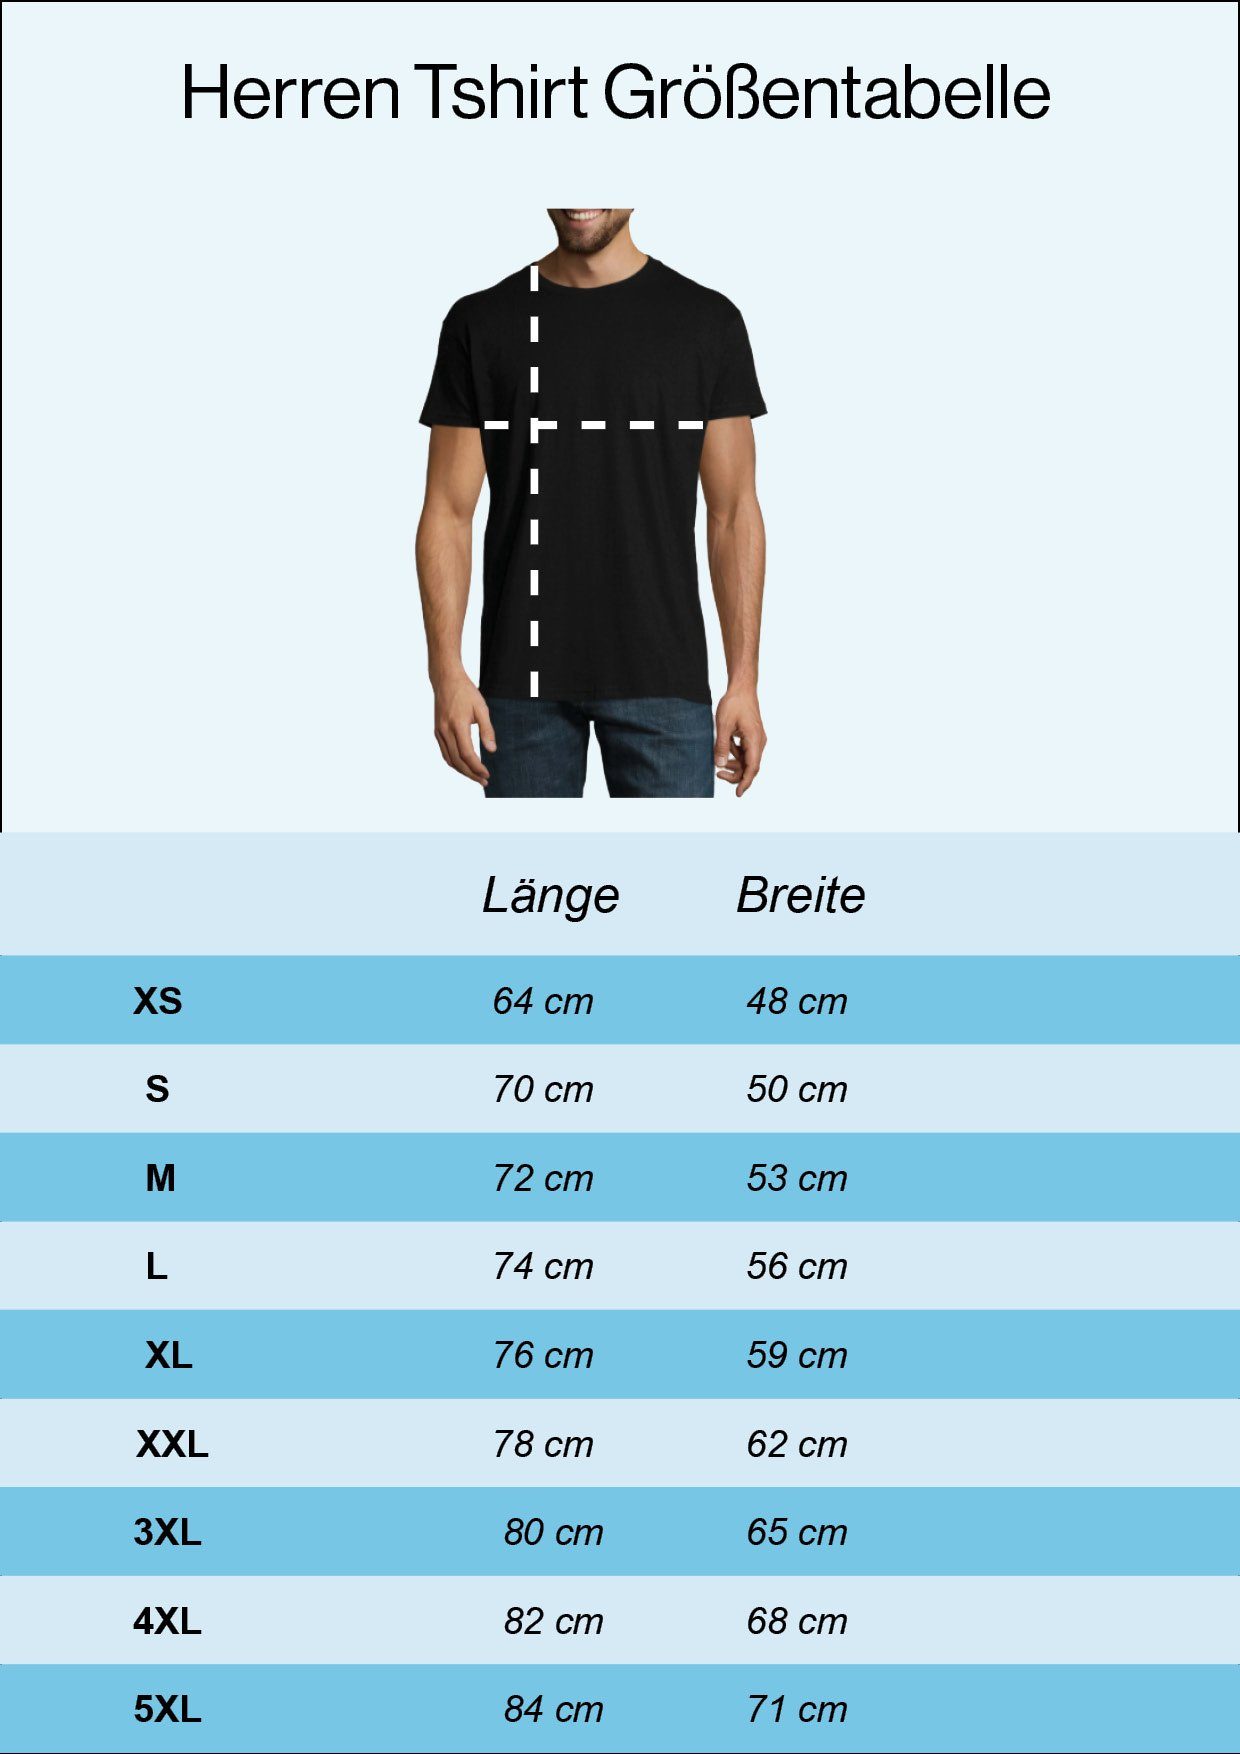 Gutaussehend Designz Youth 60 Und Herren mit Shirt Burgund Frontprint T-Shirt lustigem